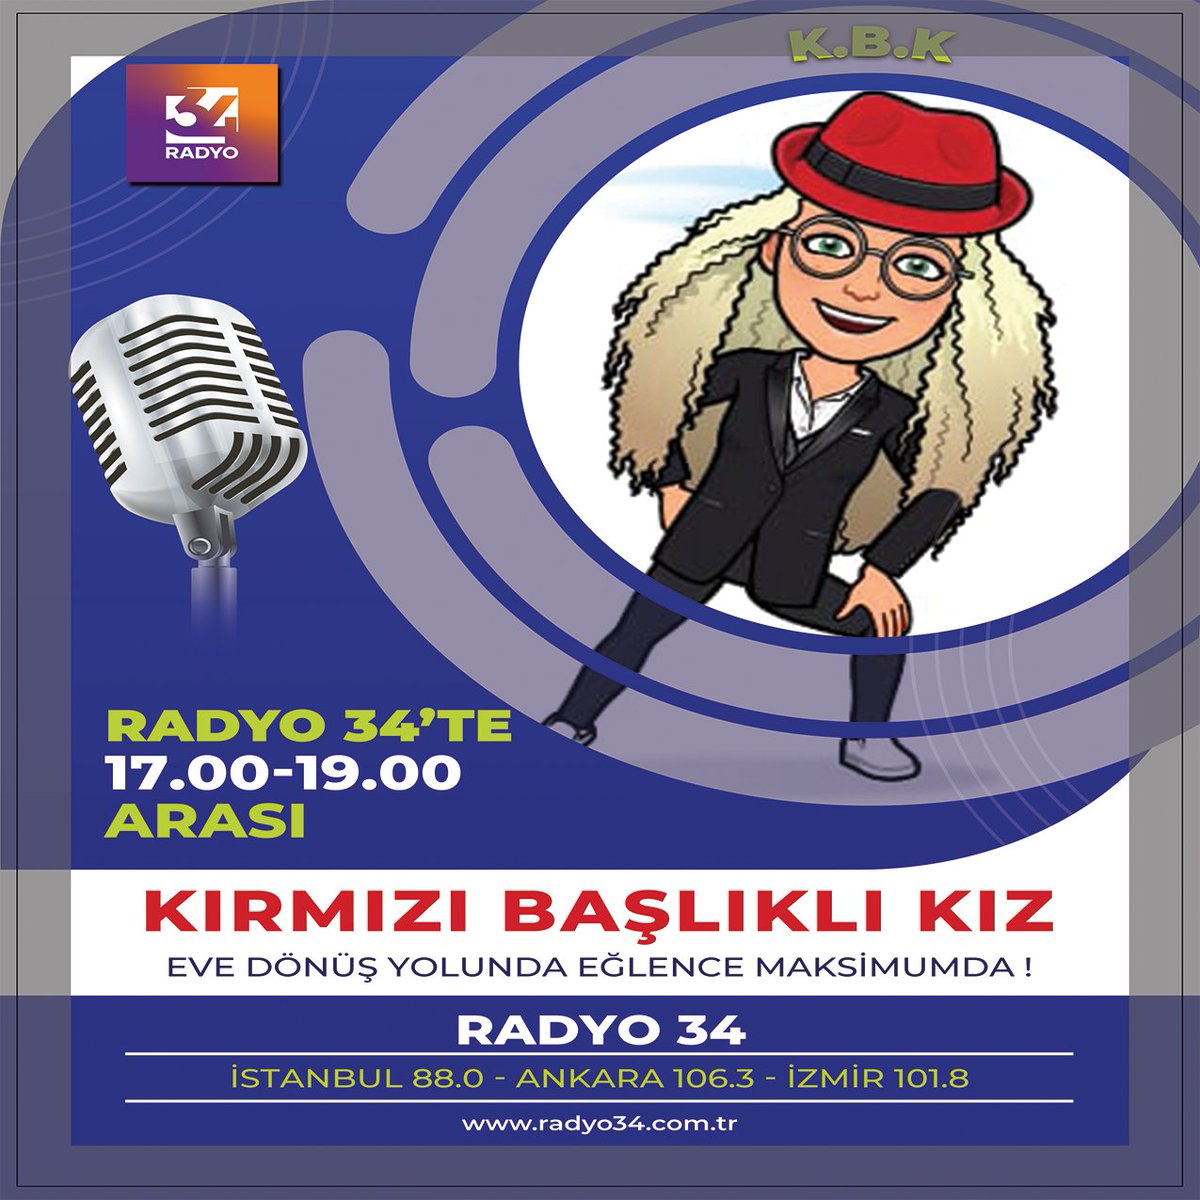 Eve dönüş yolunda zamanın nasıl geçtiğini anlamayacaksınız. Türkiye'nin açık ara en iyi show programı KIRMIZI BAŞLIKLI KIZ hafta içi her gün 17.00-19.00 saatleri arasında Radyo 34'te.

#kırmızıbaşlıklıkız #kbk #radyo34 #radyo #canliyayin

@kbk2322
@radyo34tr